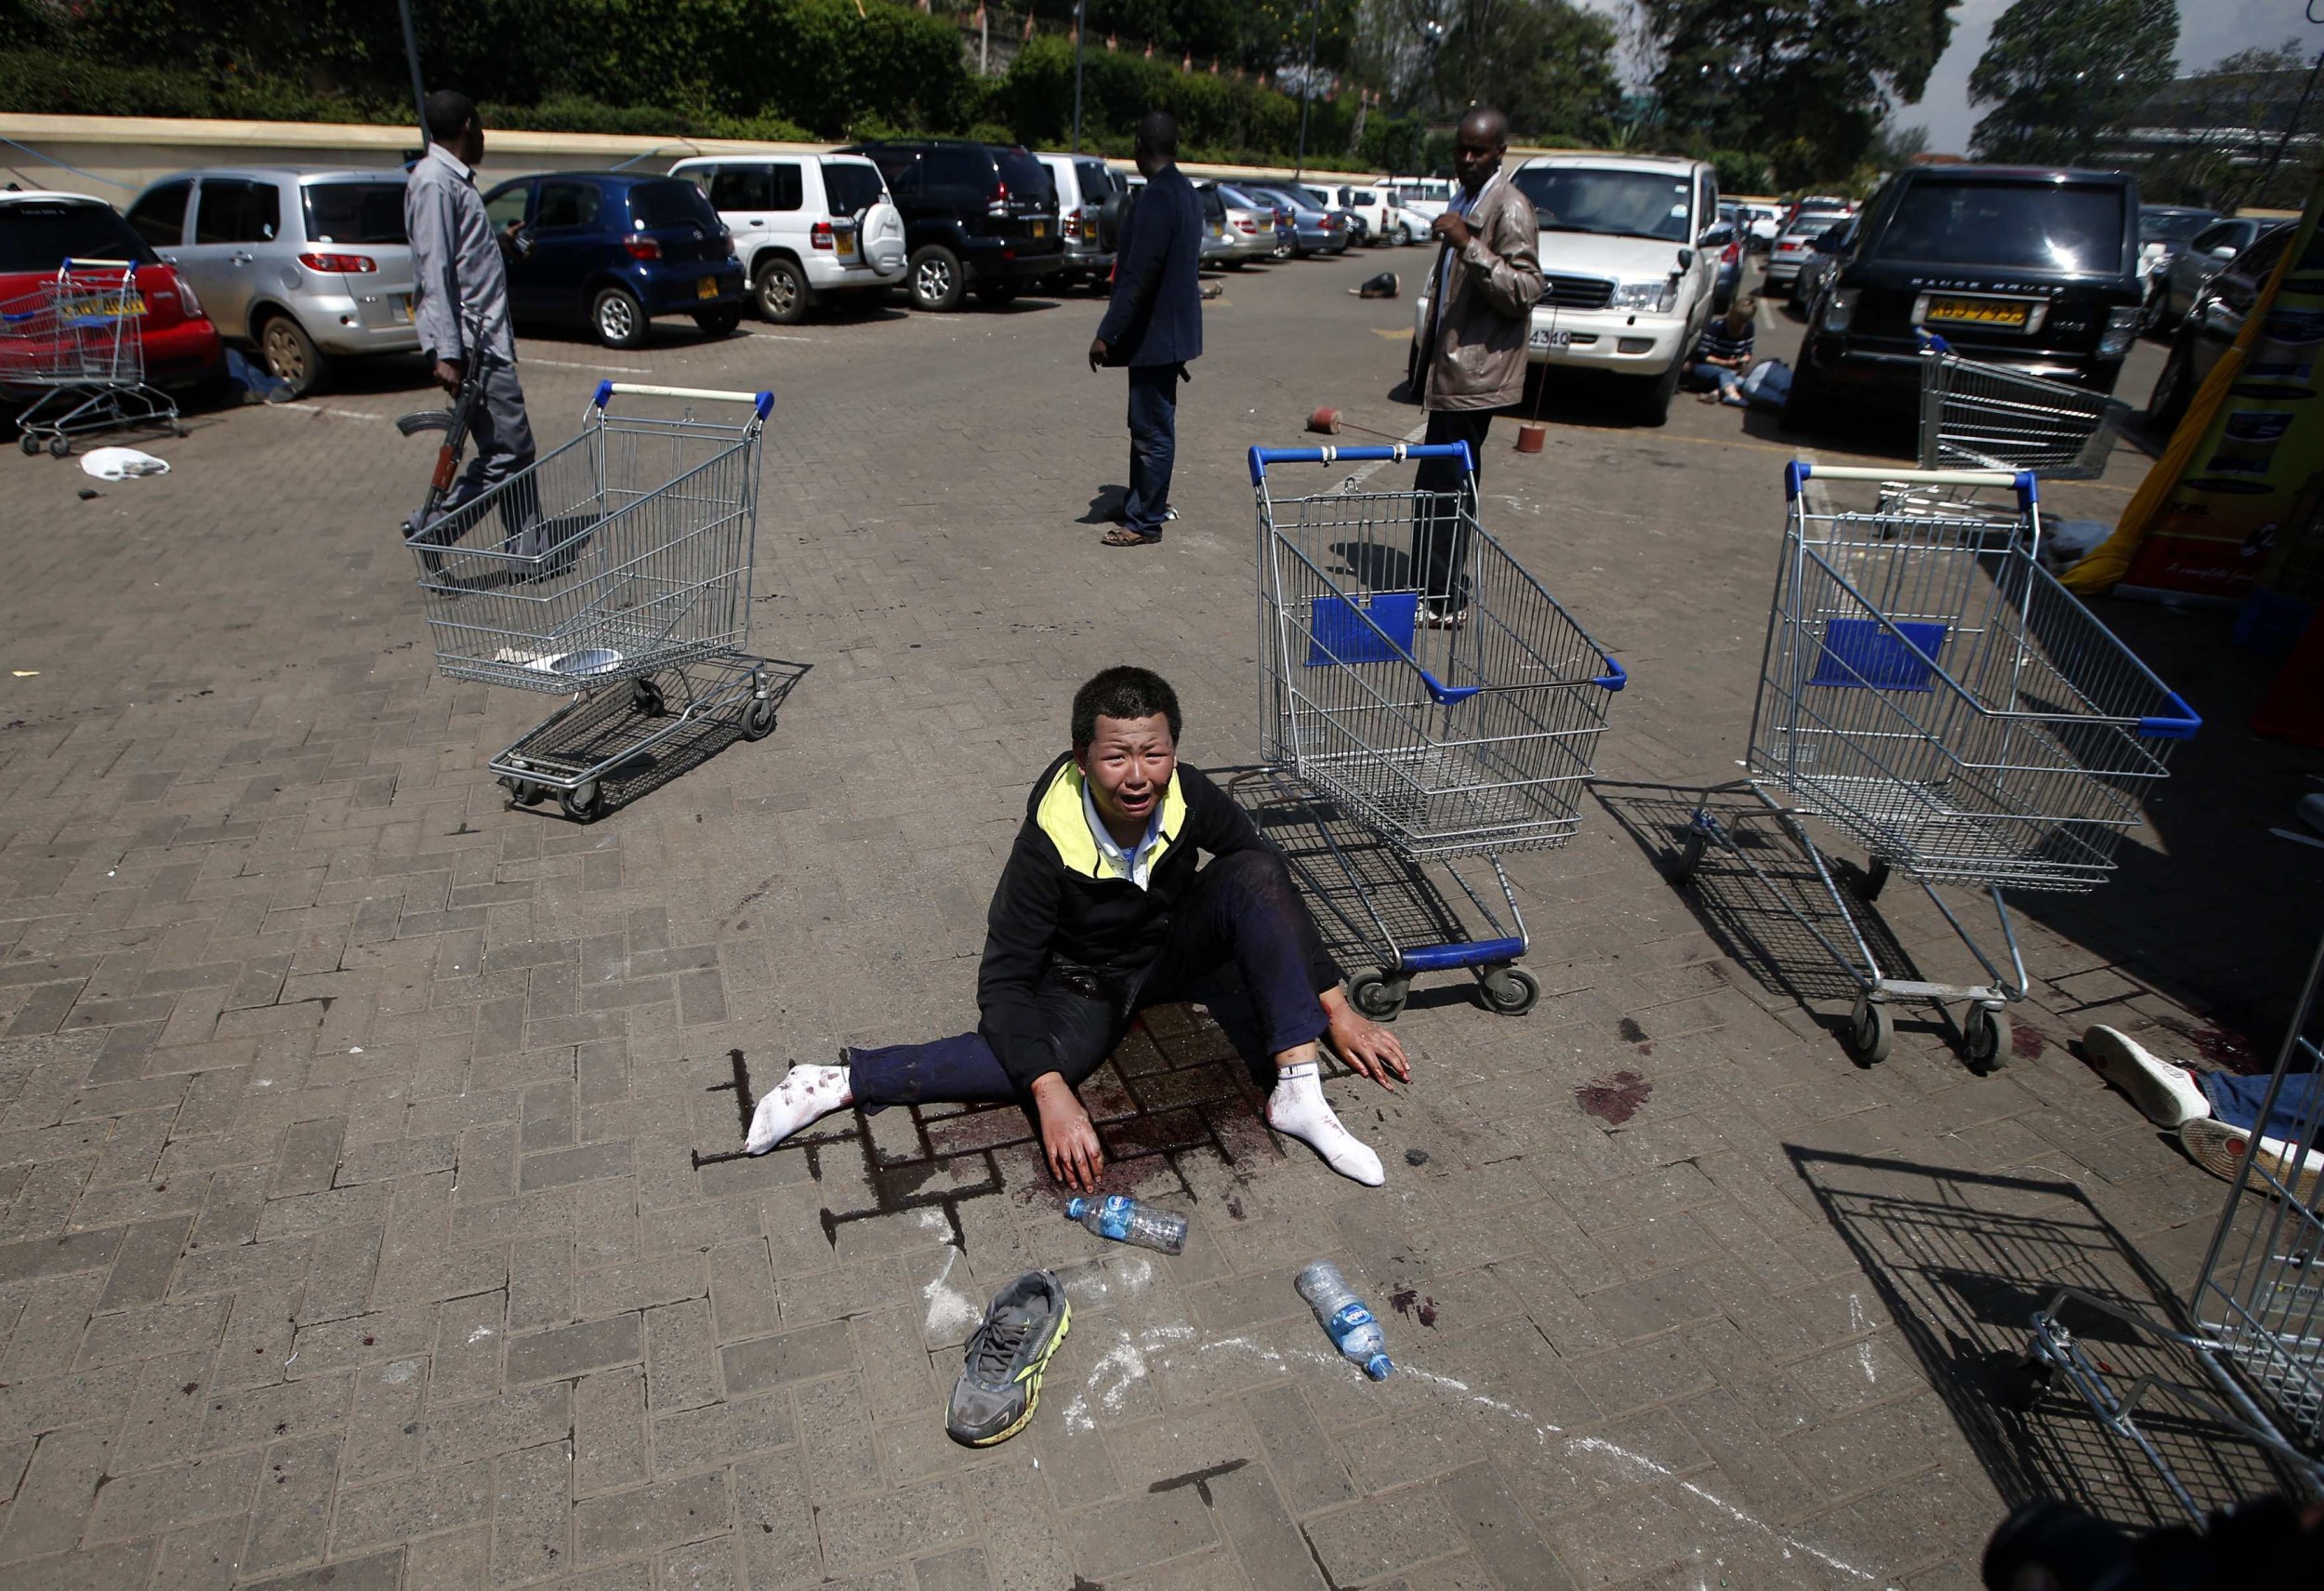 Nairobi Man shopping shooting